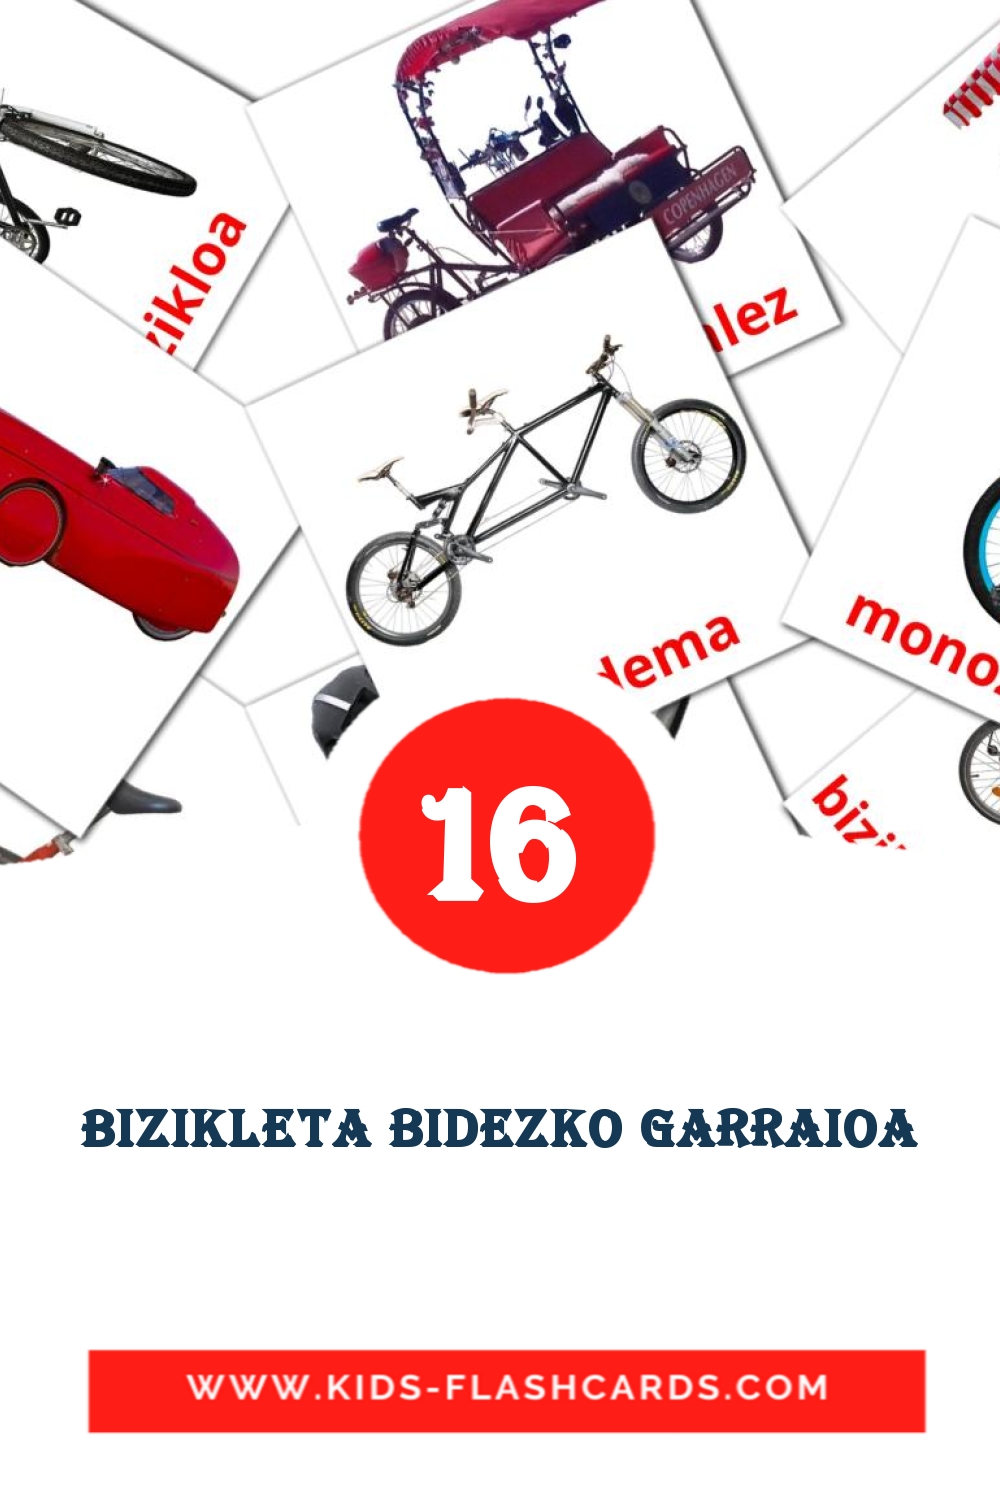 16 carte illustrate di Bizikleta bidezko garraioa per la scuola materna in basco